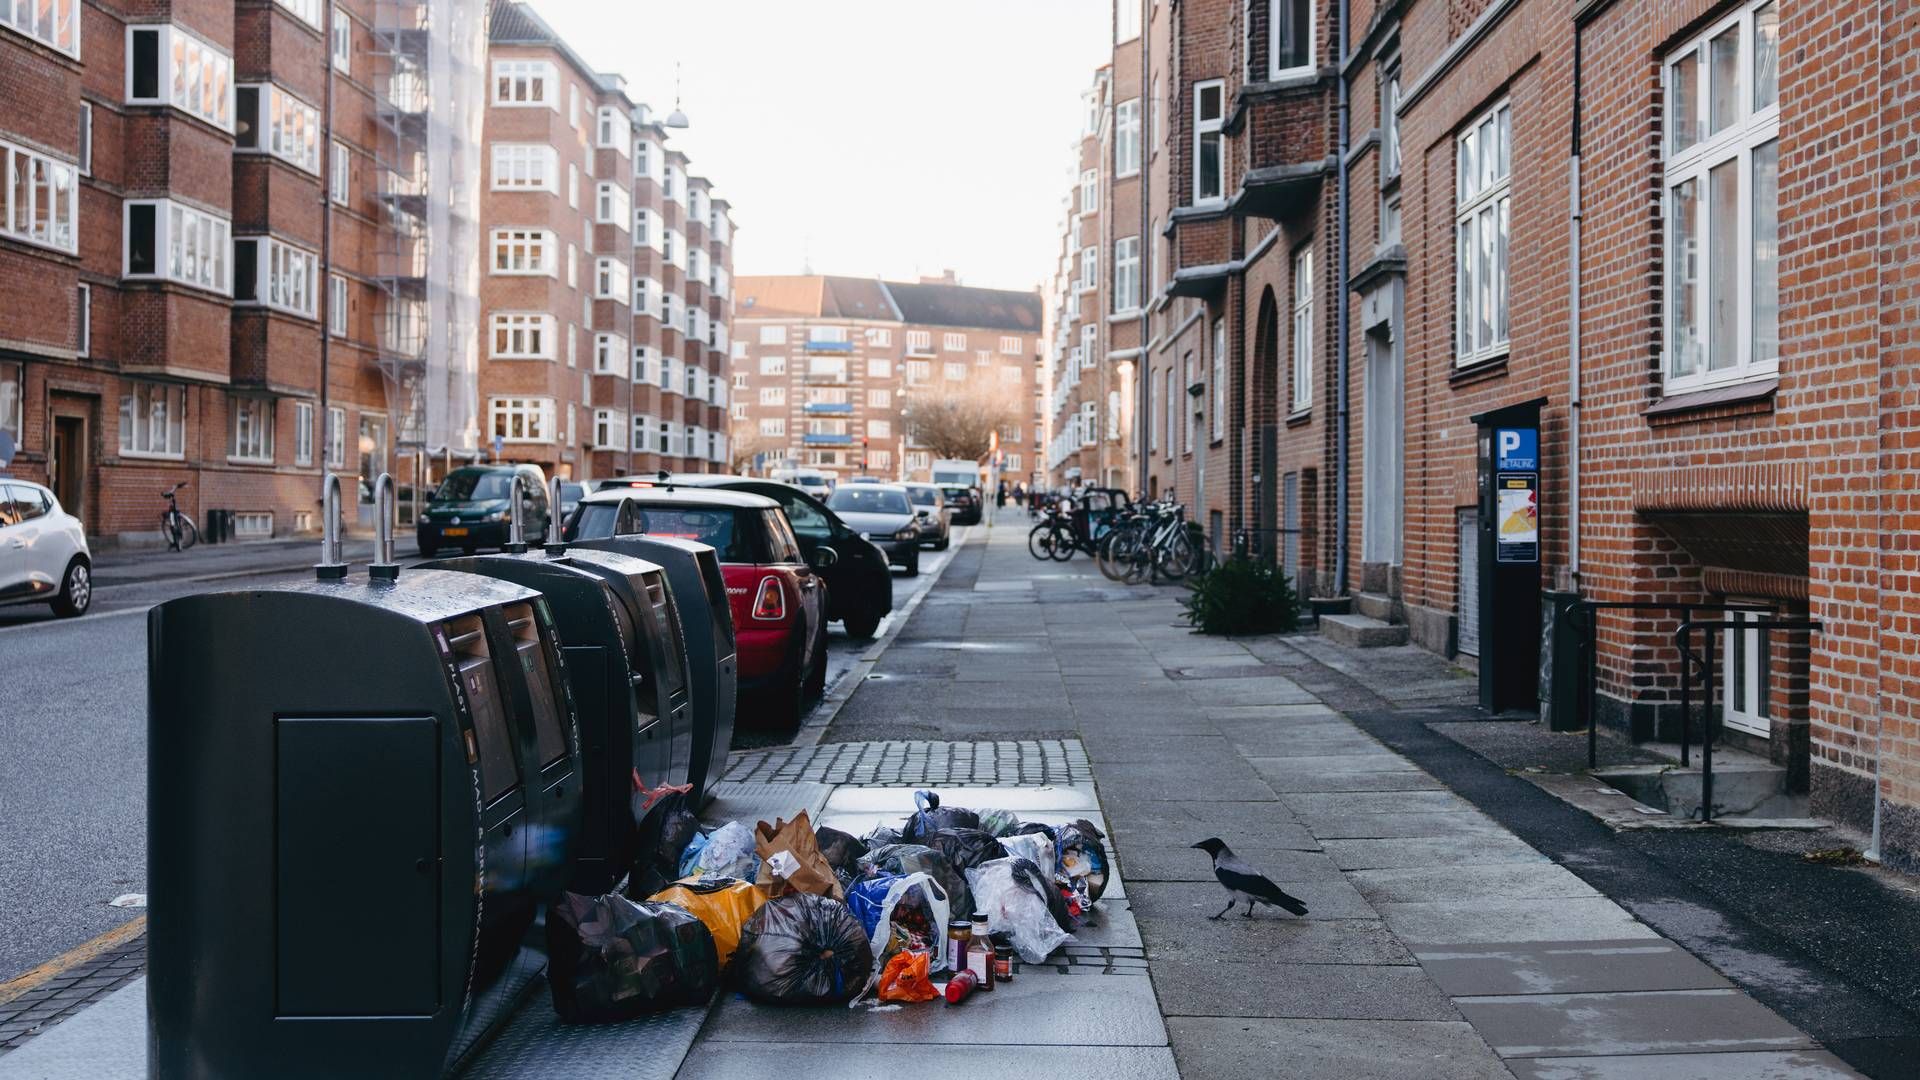 Affald havde siden julemåneden hobet sig op i Aarhus efter manglende tømning. | Foto: Emilie Toldam Futtrup